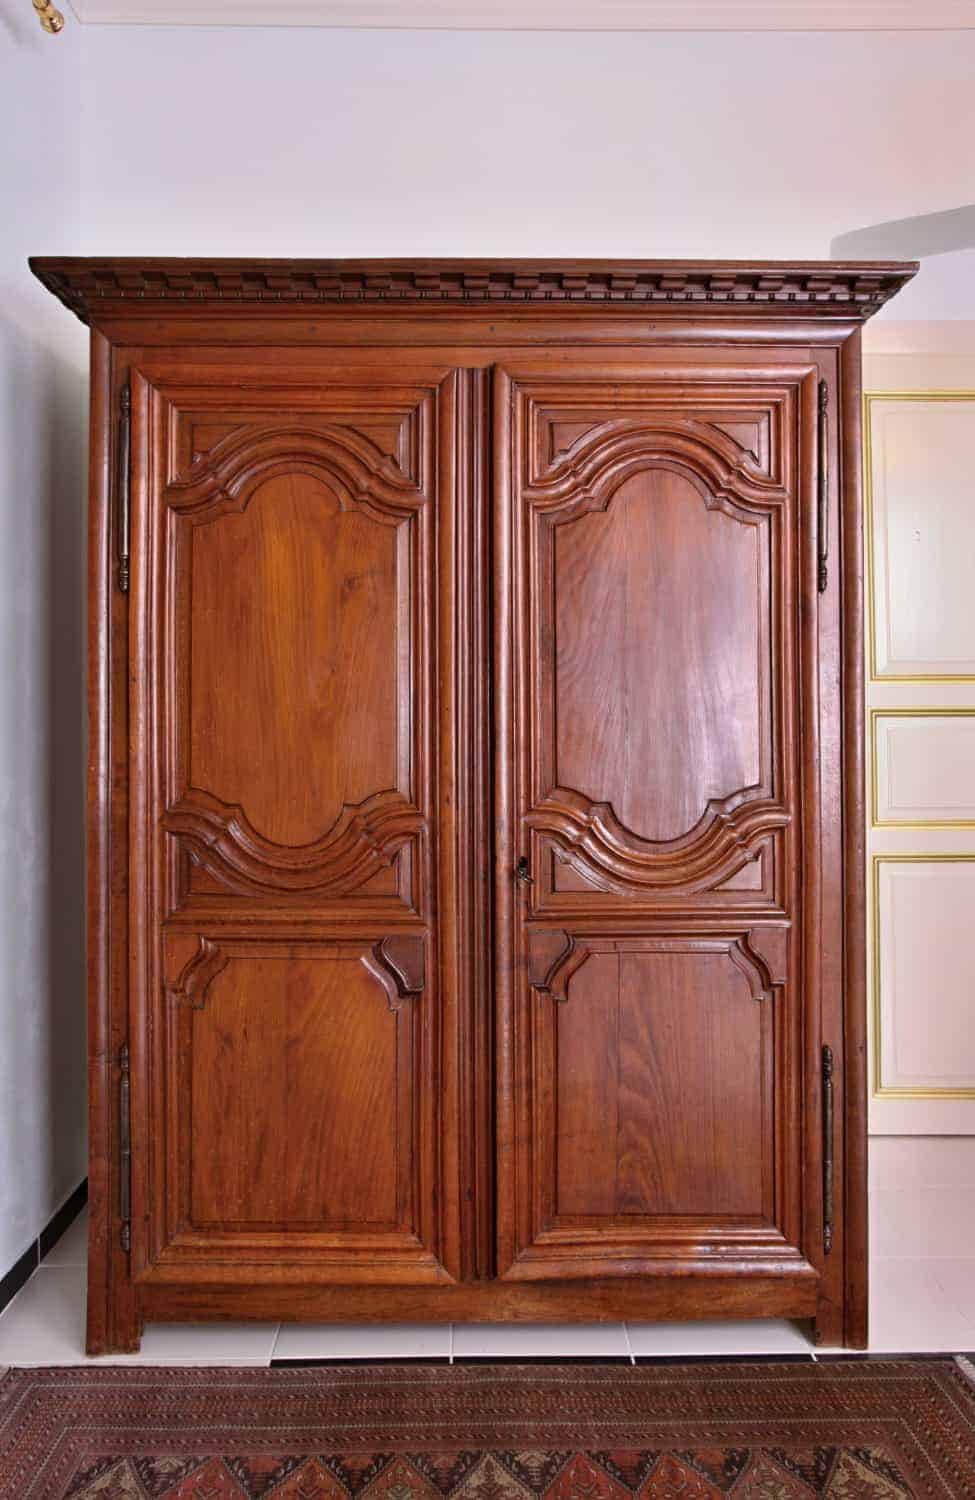 Dubová skříň z 18. století – zrestaurovaná